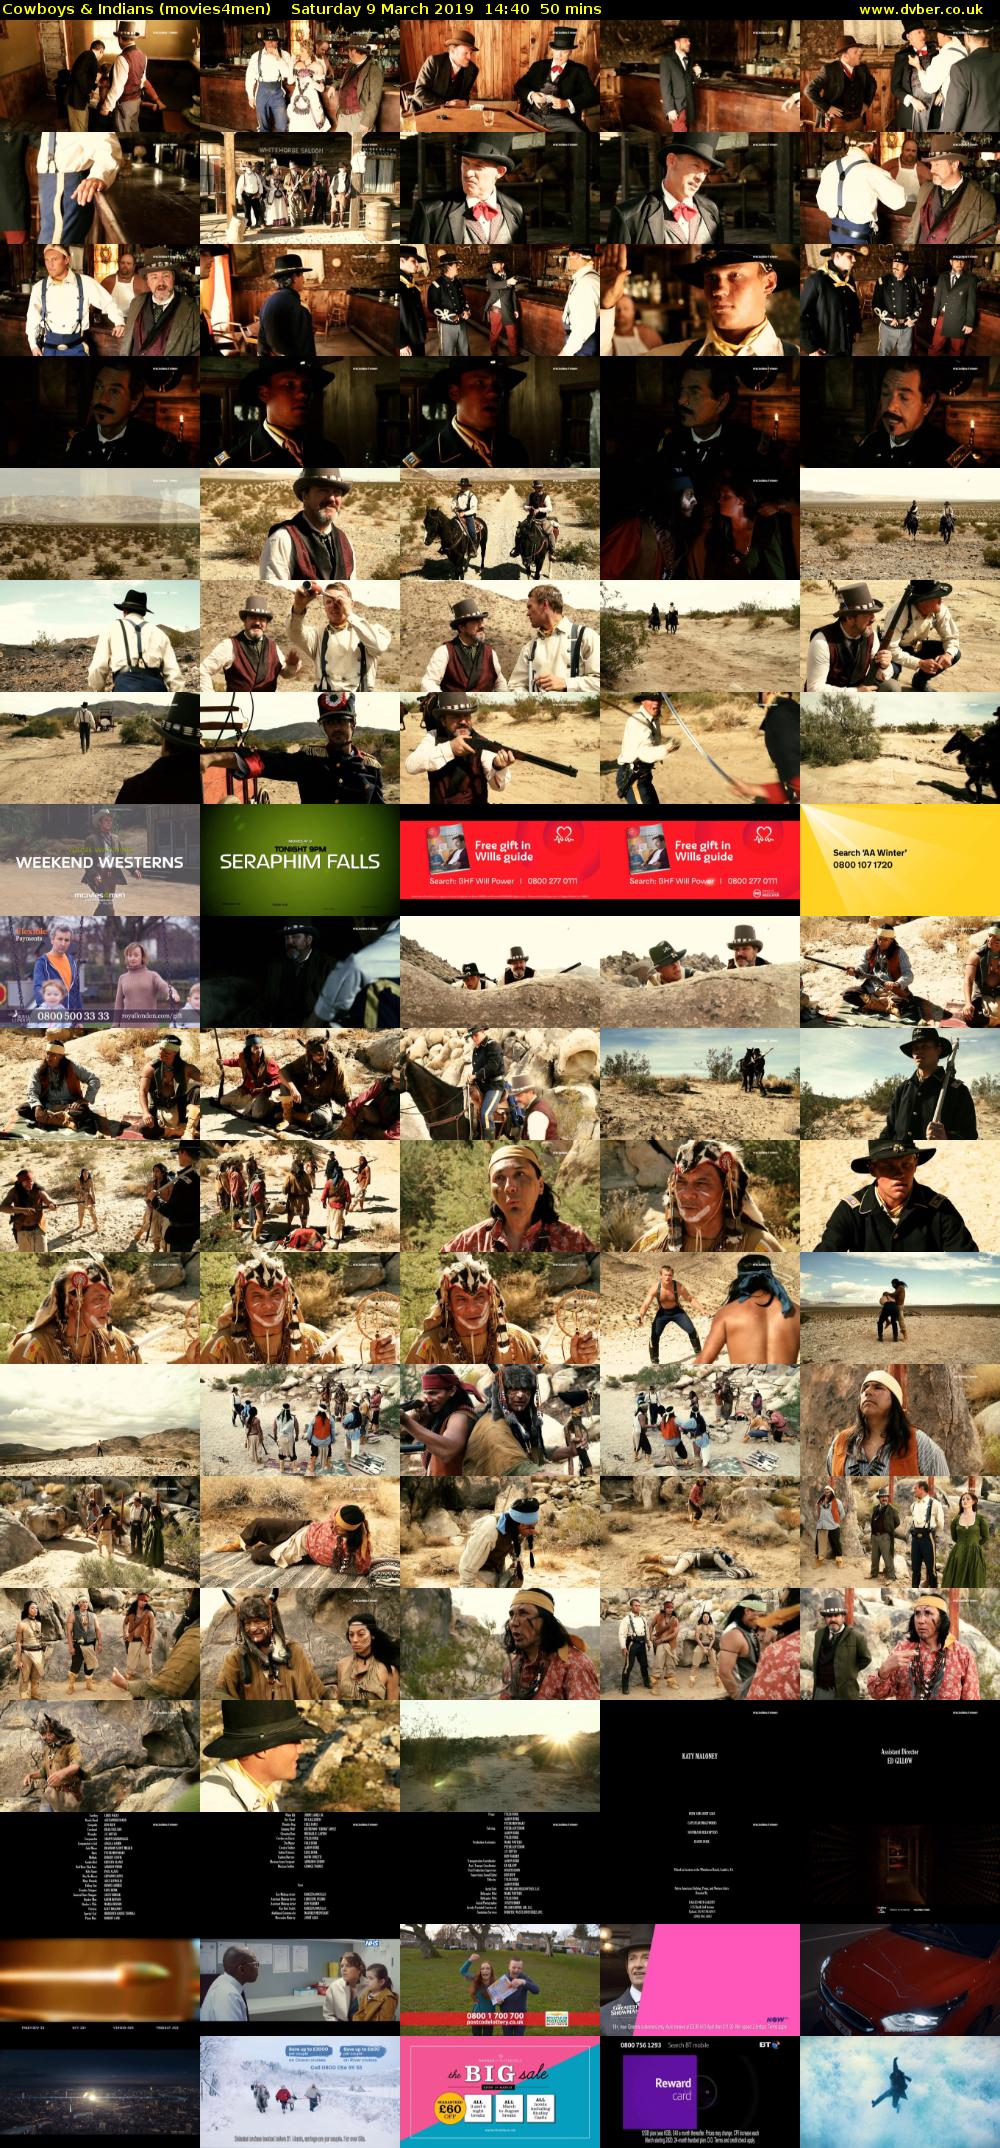 Cowboys & Indians (movies4men) Saturday 9 March 2019 14:40 - 15:30